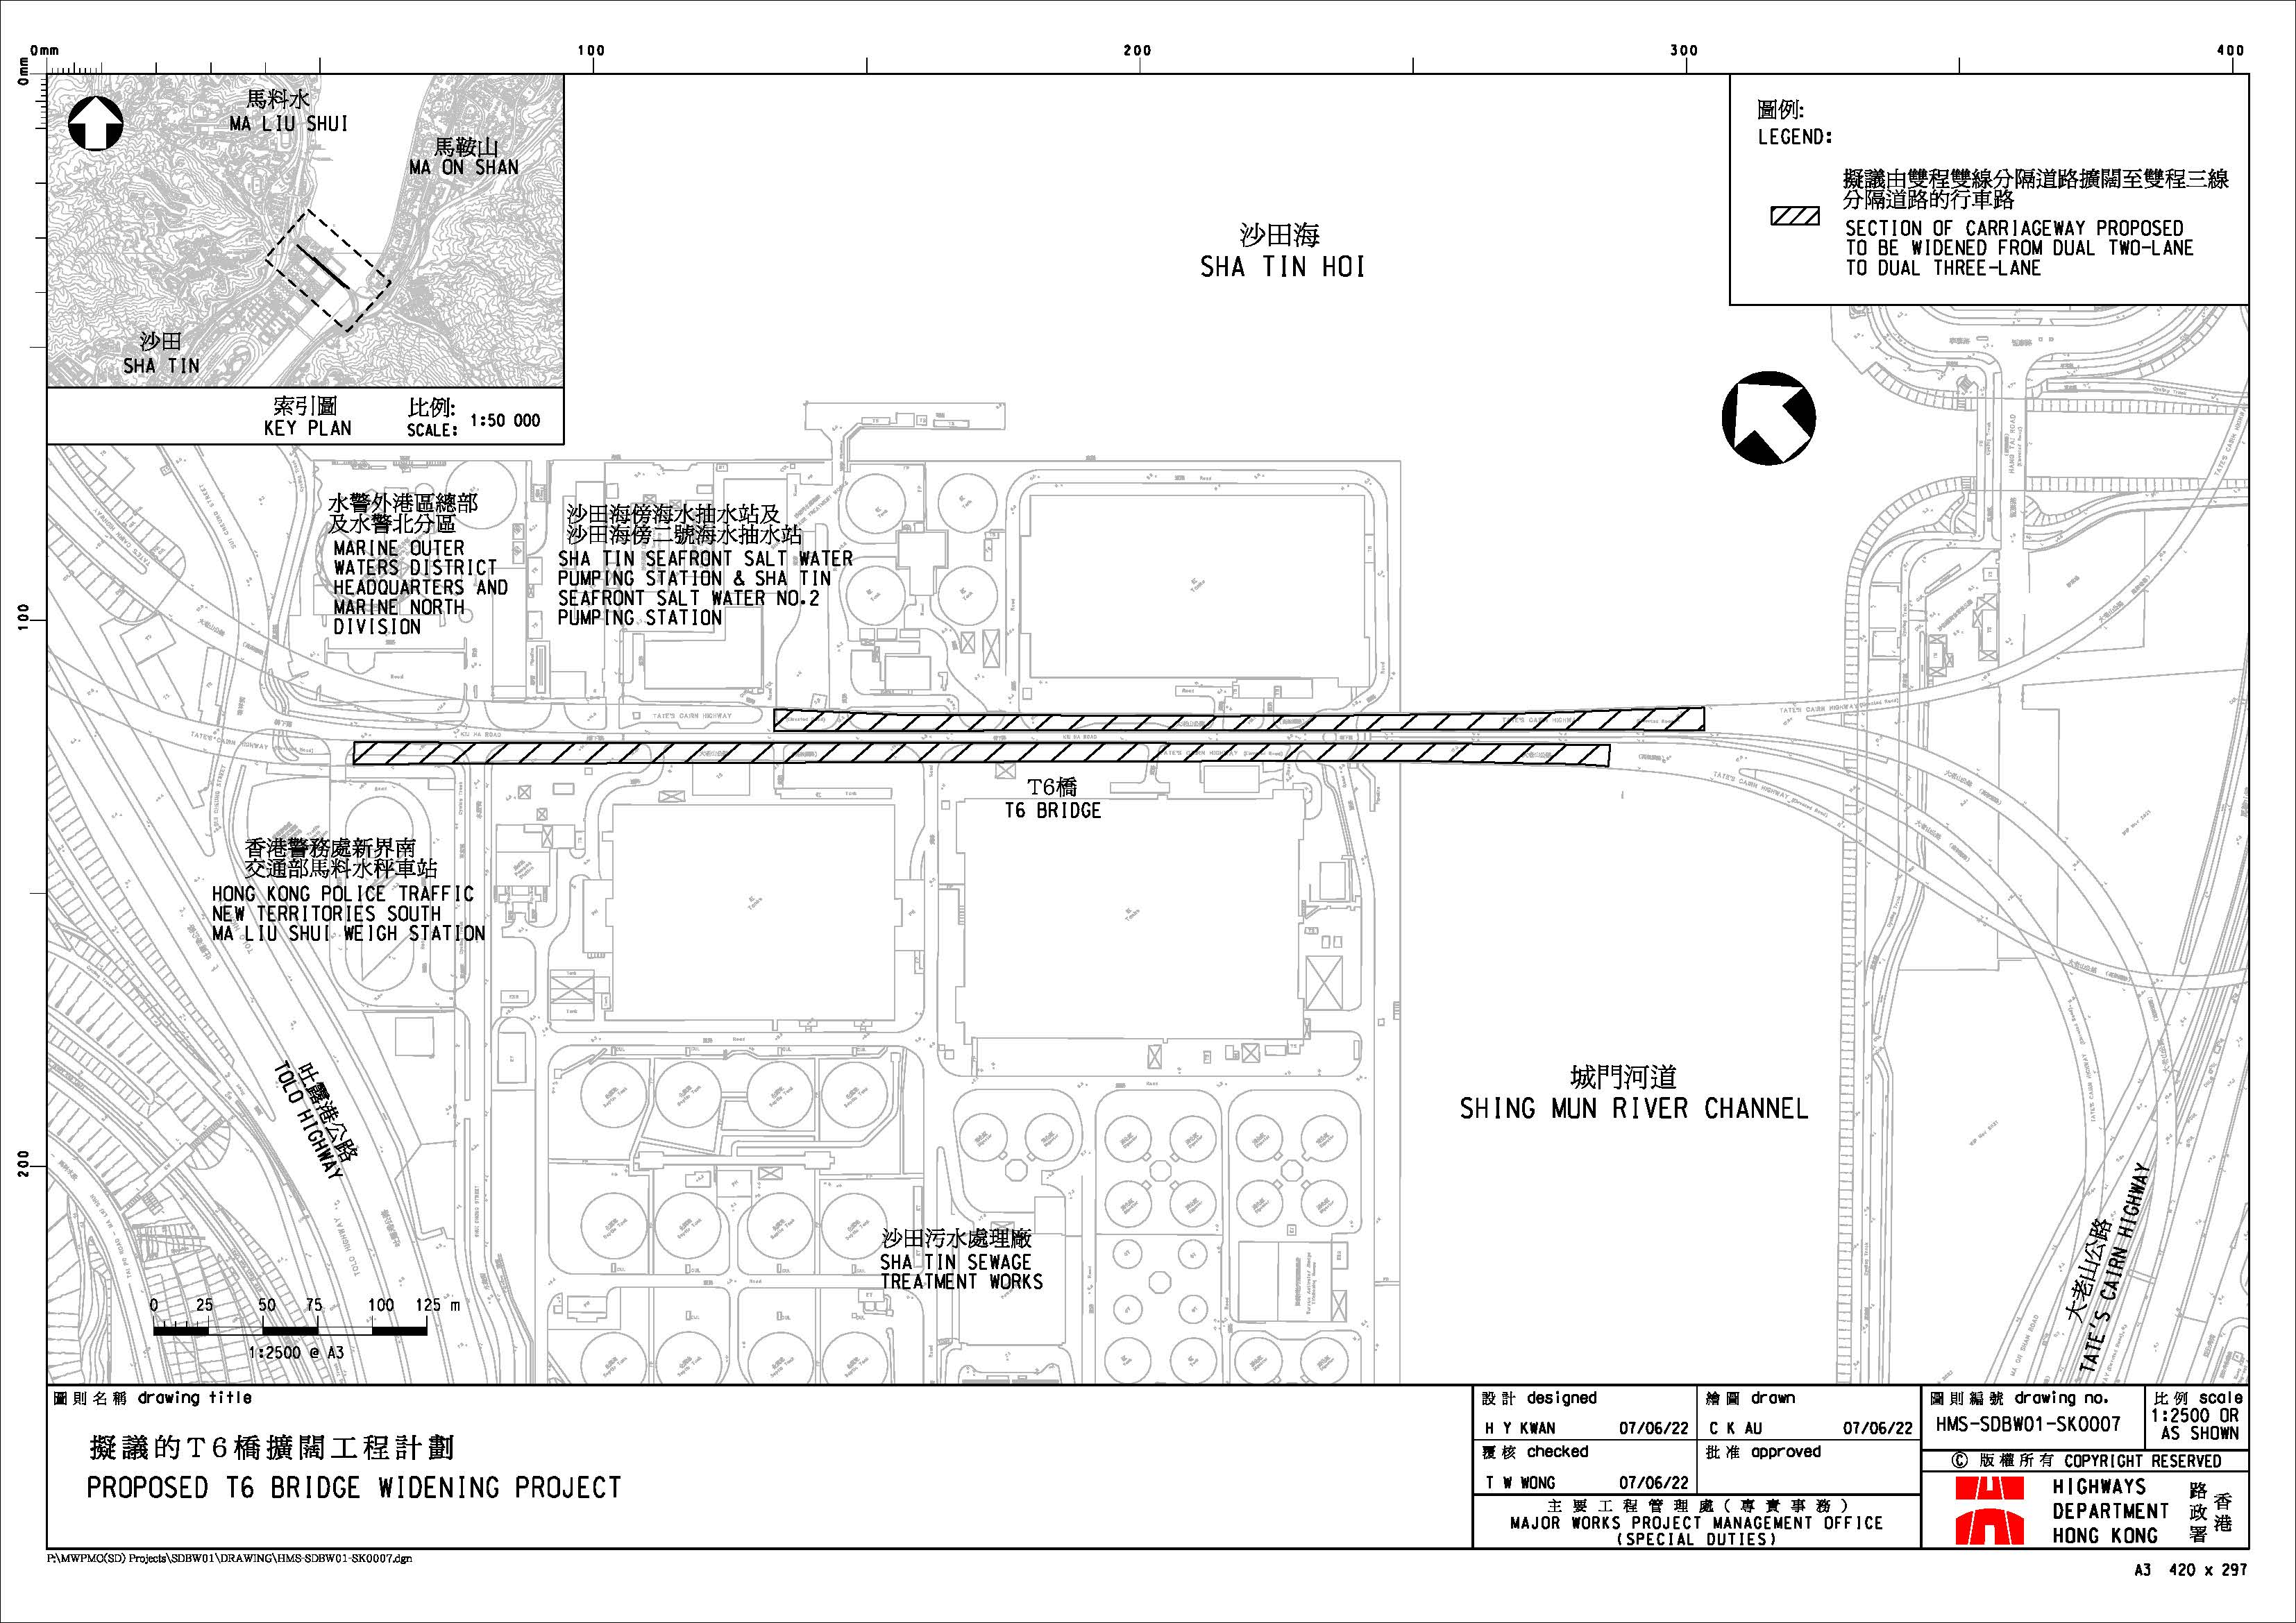 大老山公路T6桥扩阔工程 - 平面图